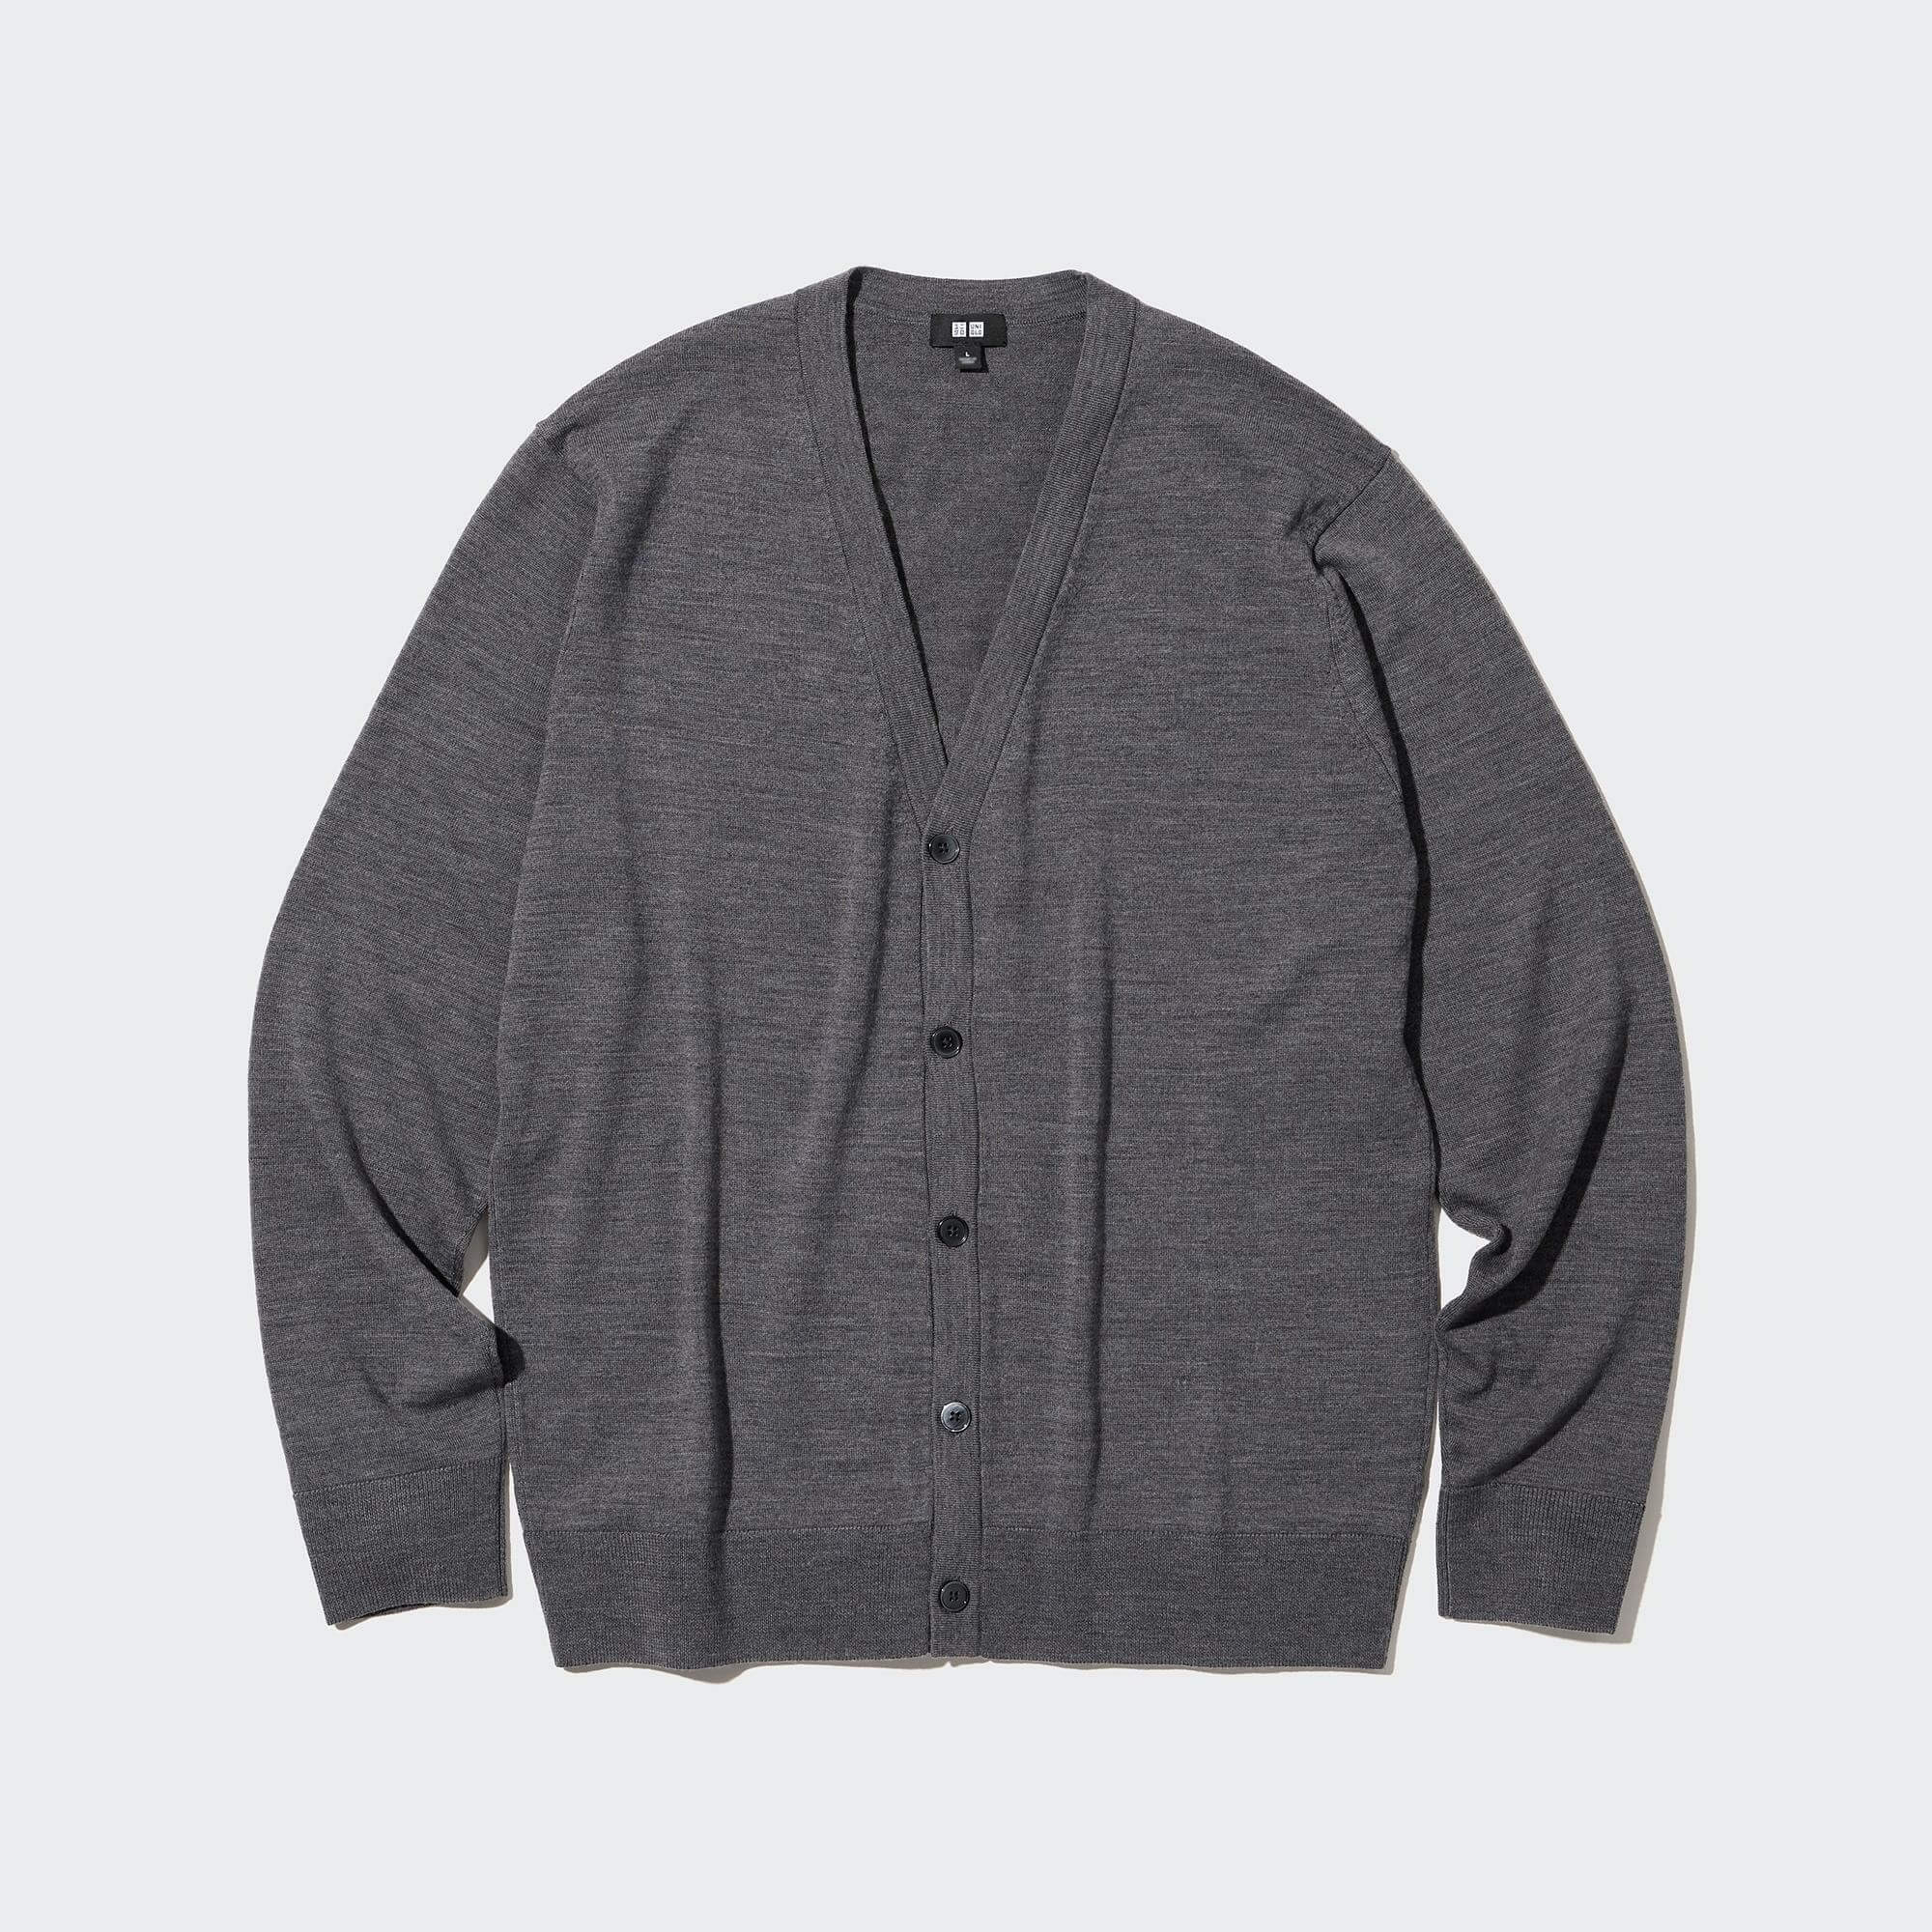 Кардиган Uniqlo Extra Fine Merino, серый рубашка поло uniqlo 100% extra fine merino knit long sleeved коричневый